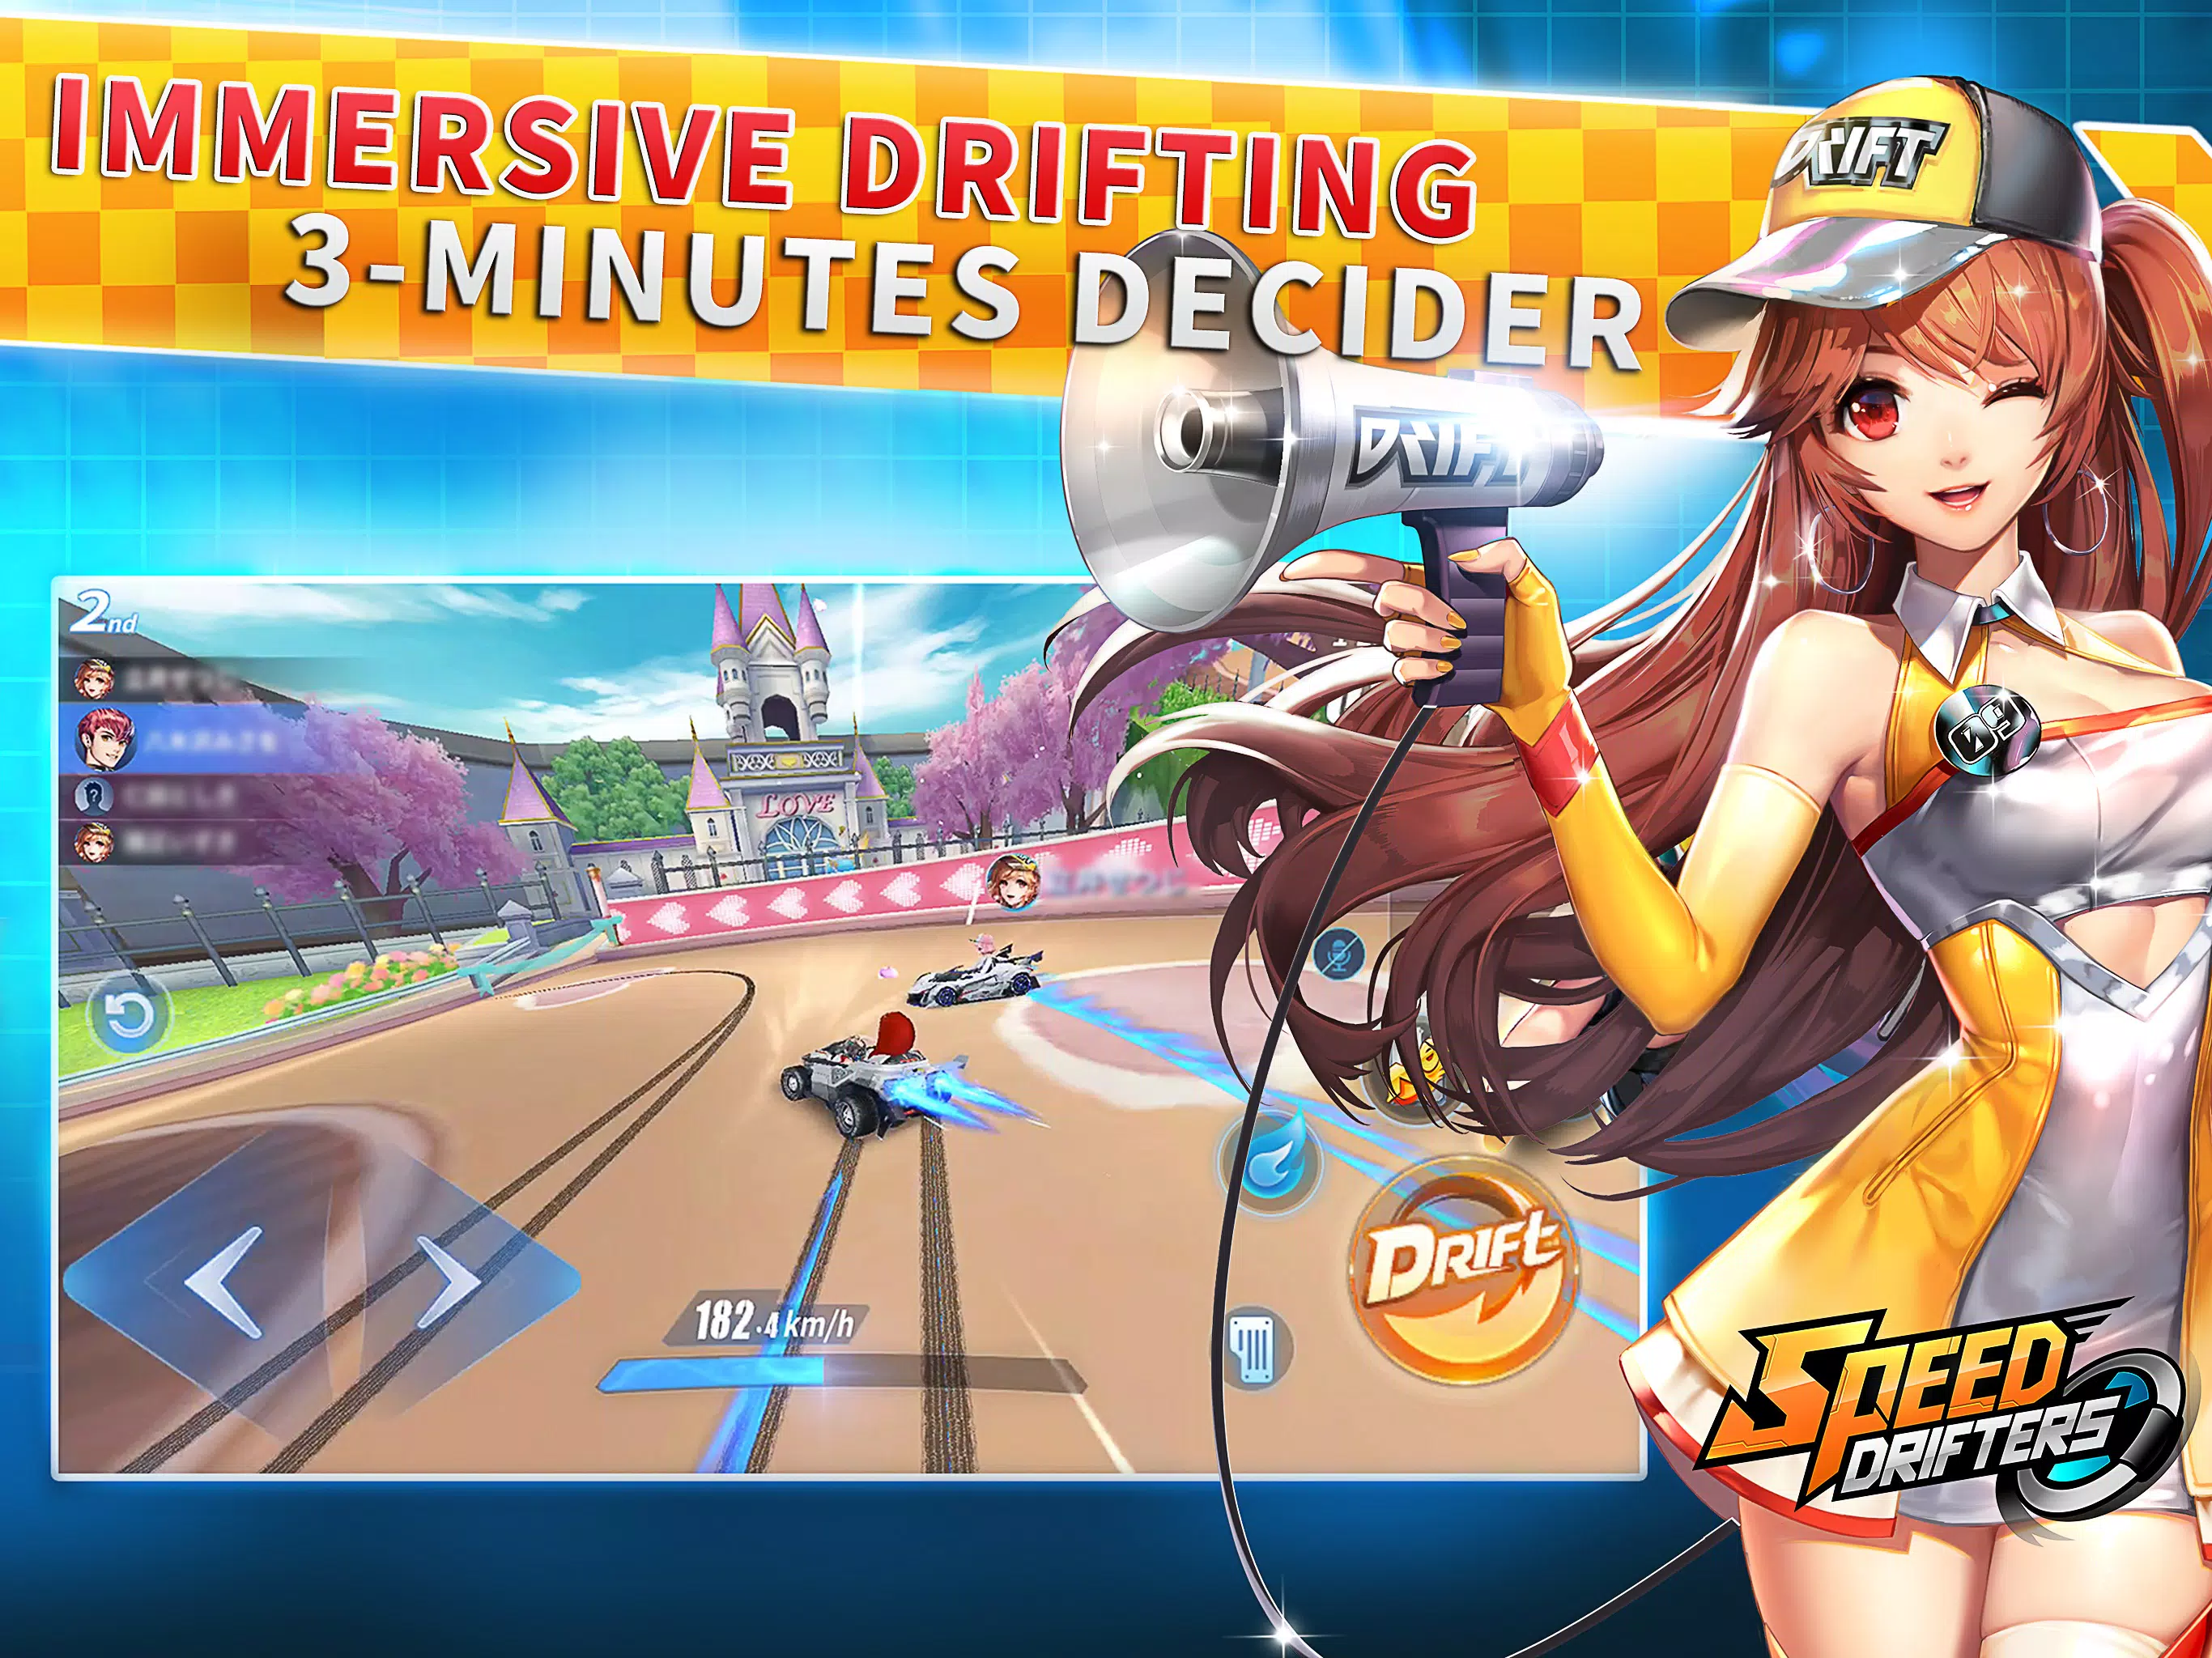 Speed Drifters: como baixar o jogo da Garena no Android e iPhone